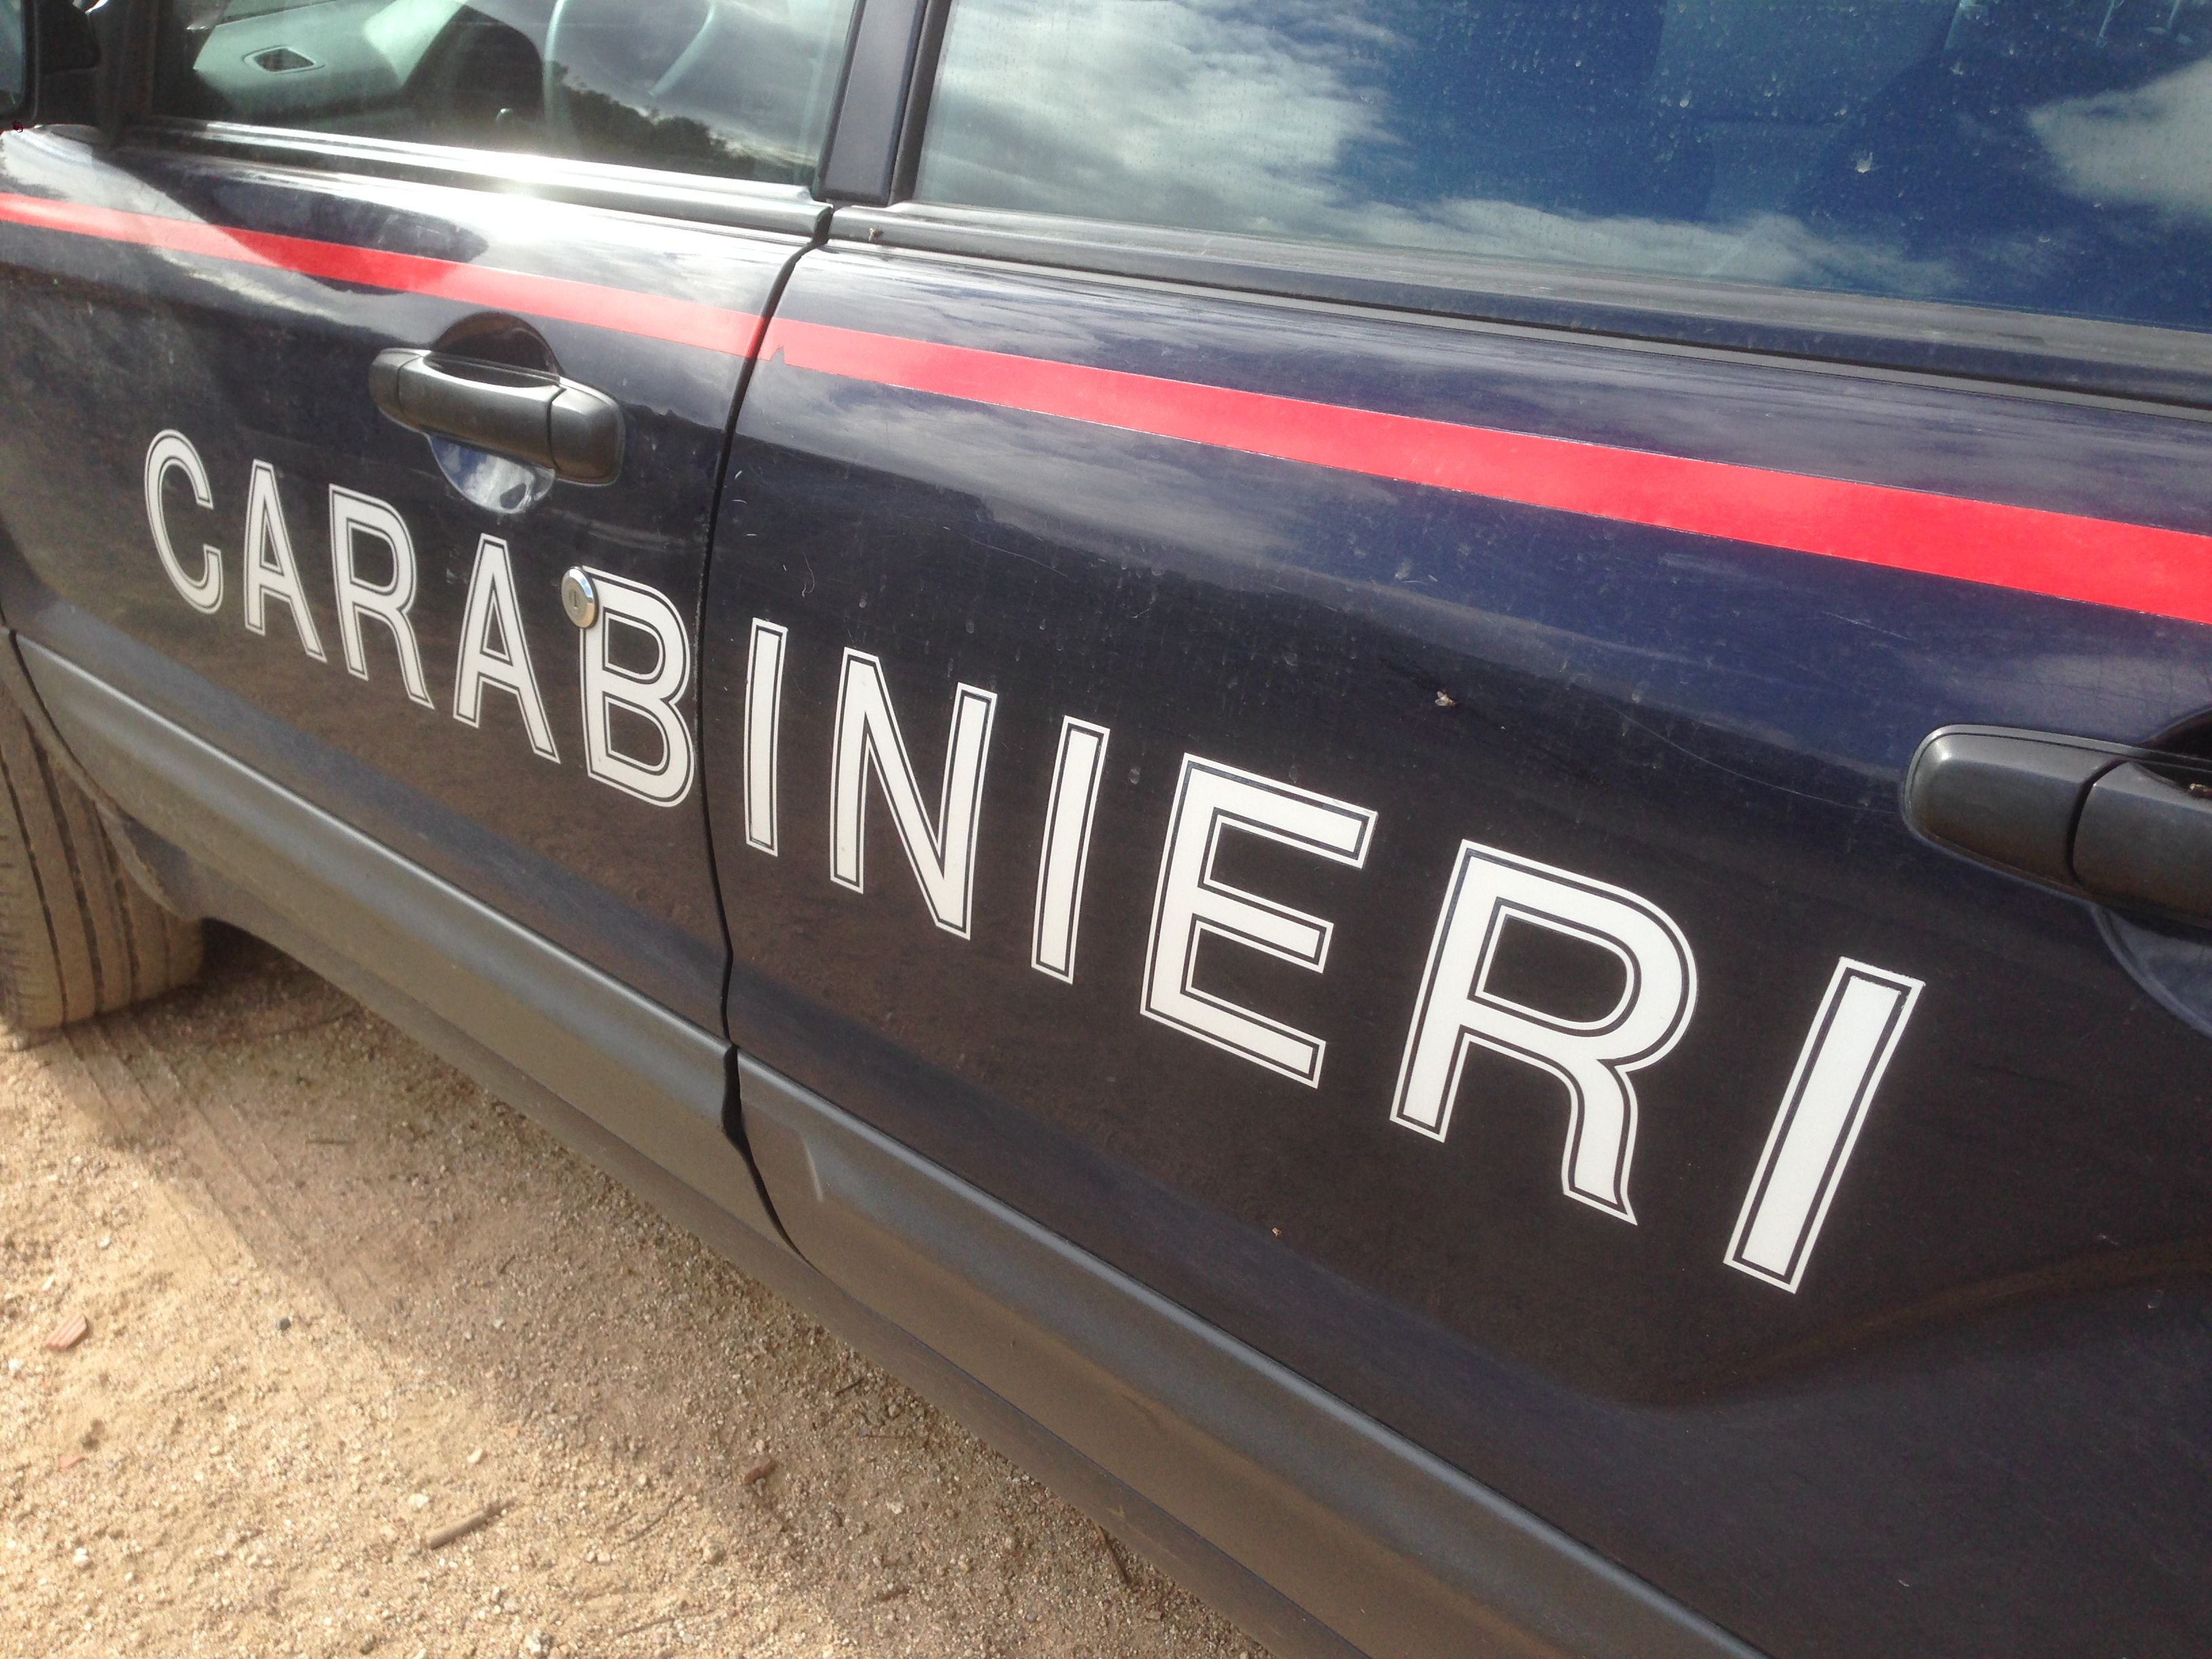 Operazione dei Carabinieri a Orune: coltivazione di canapa, arrestati 2 pastori